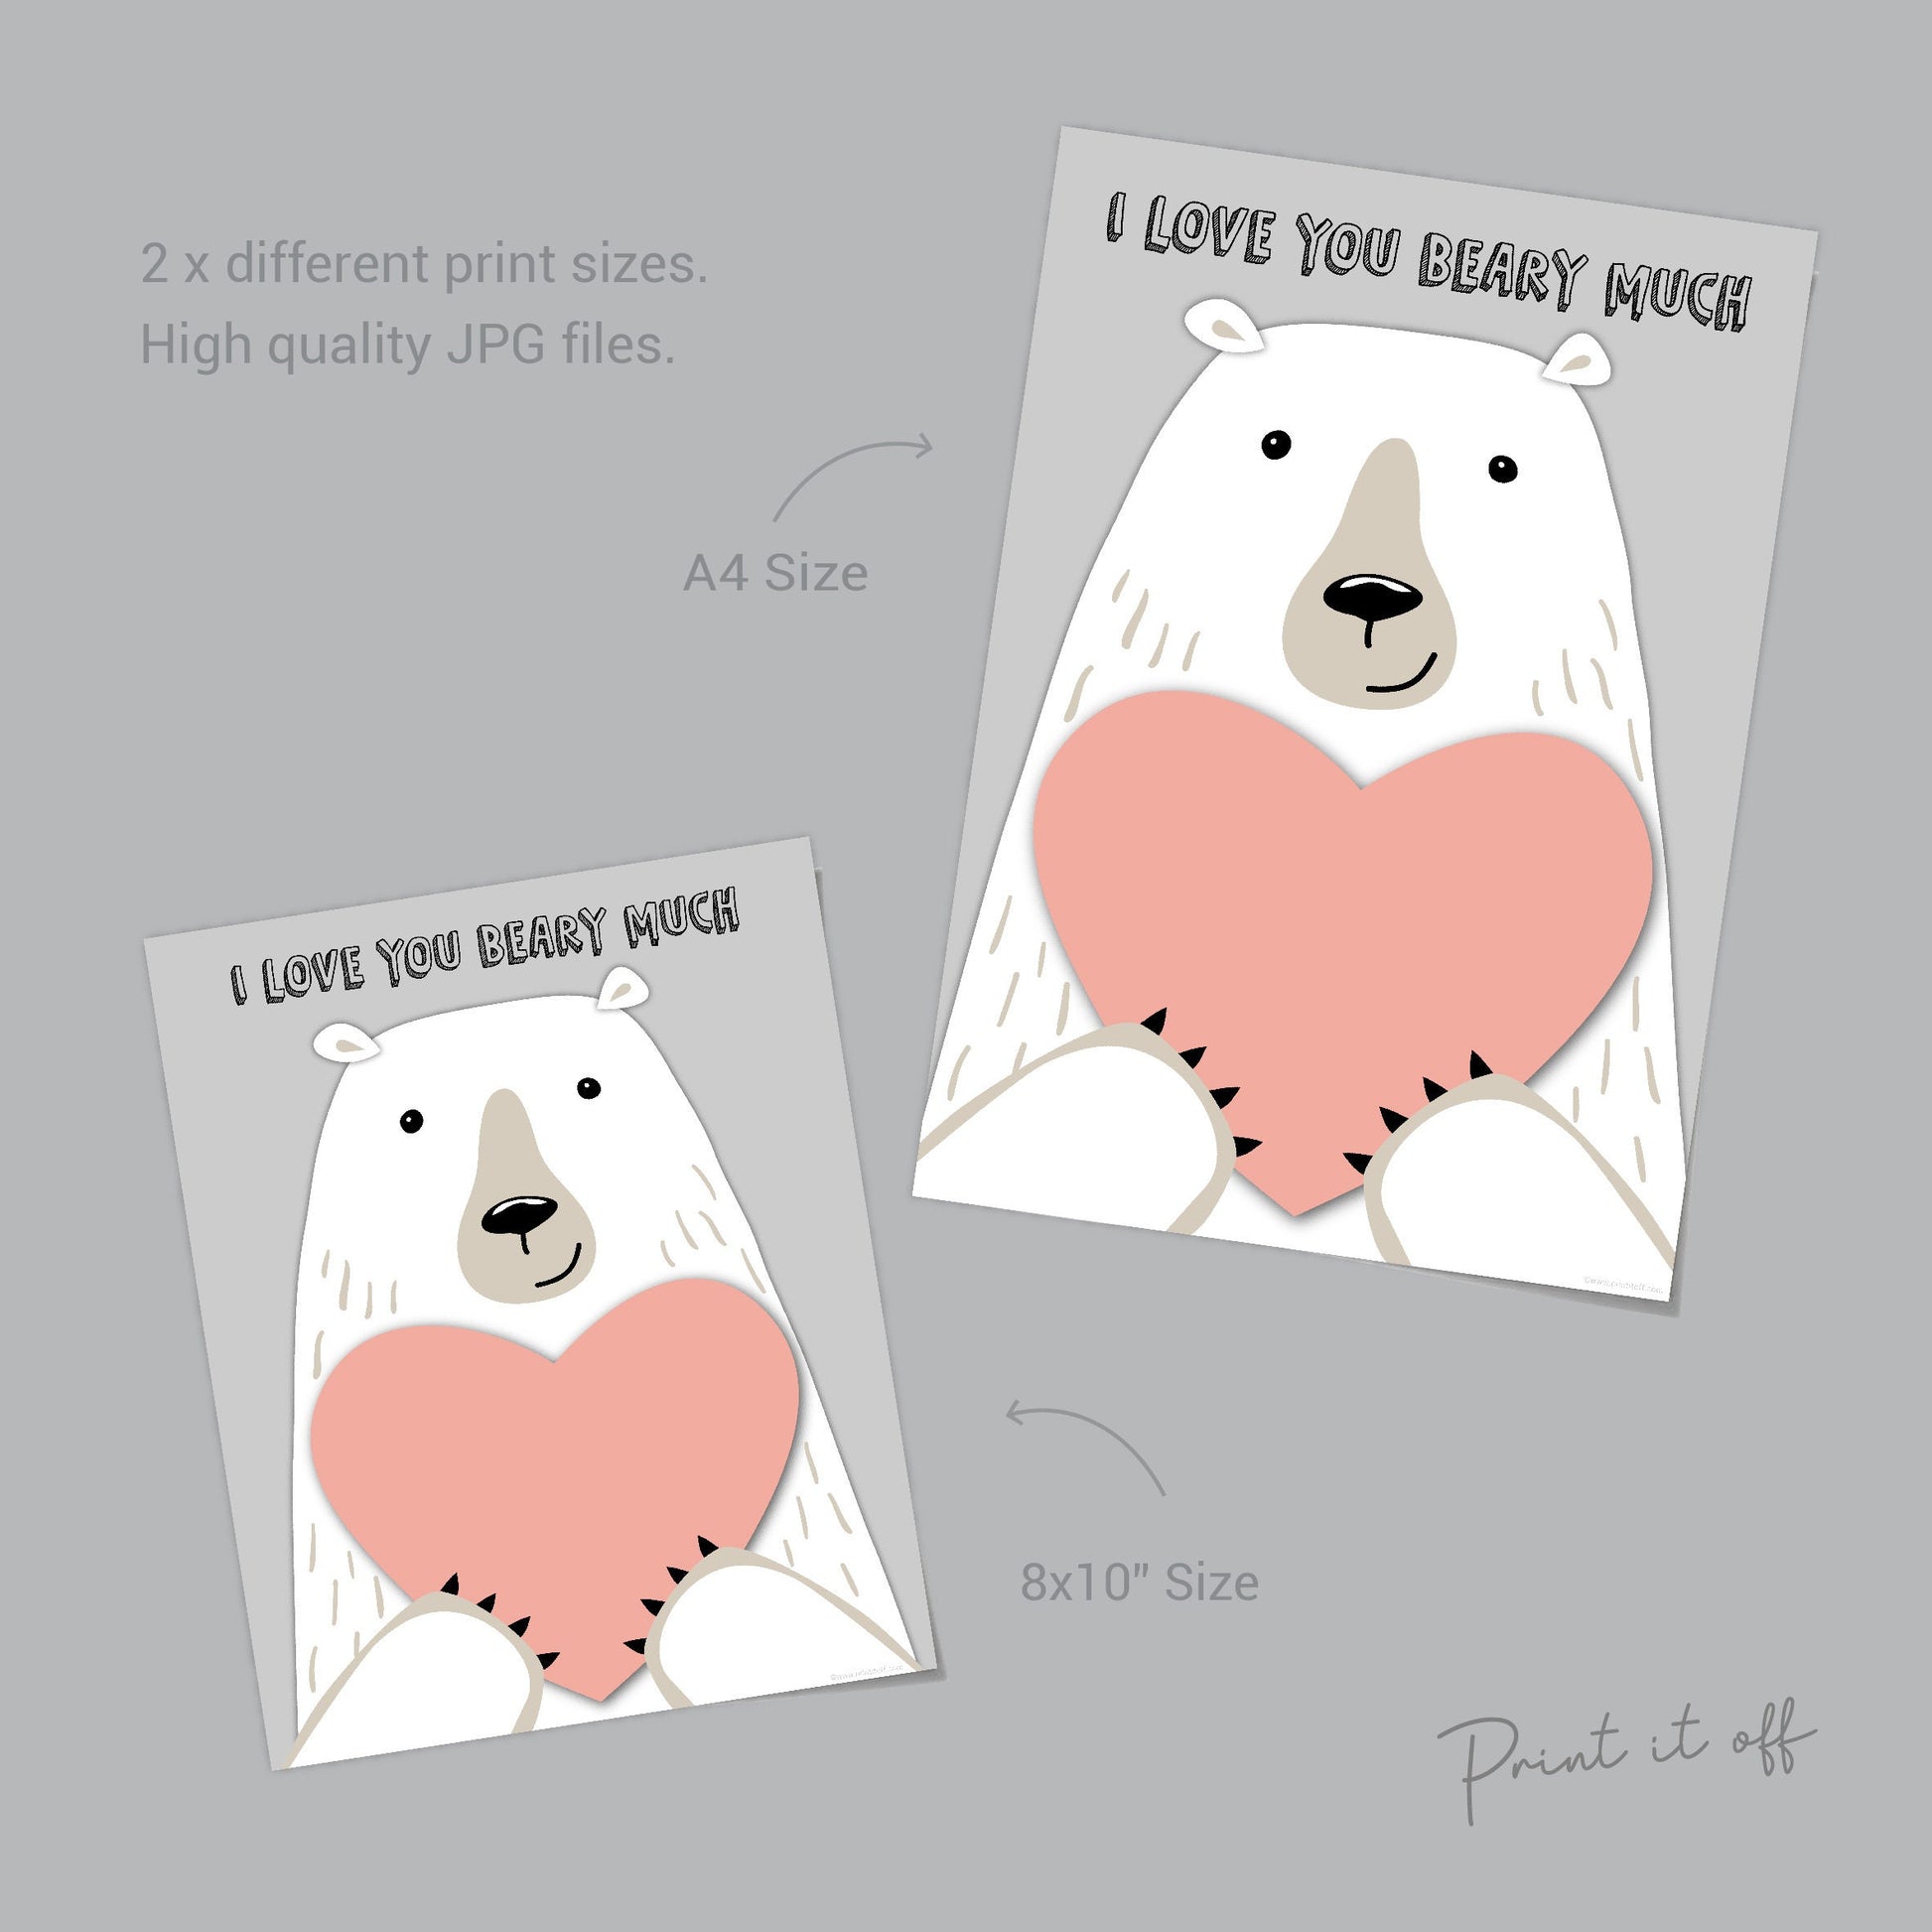 Heart Valentine Card Set, Heart Valentine, Handmade Valentines, Handmade  Card Set, Pretty Valentines, Valentines Day Hearts, Valentine -  New  Zealand